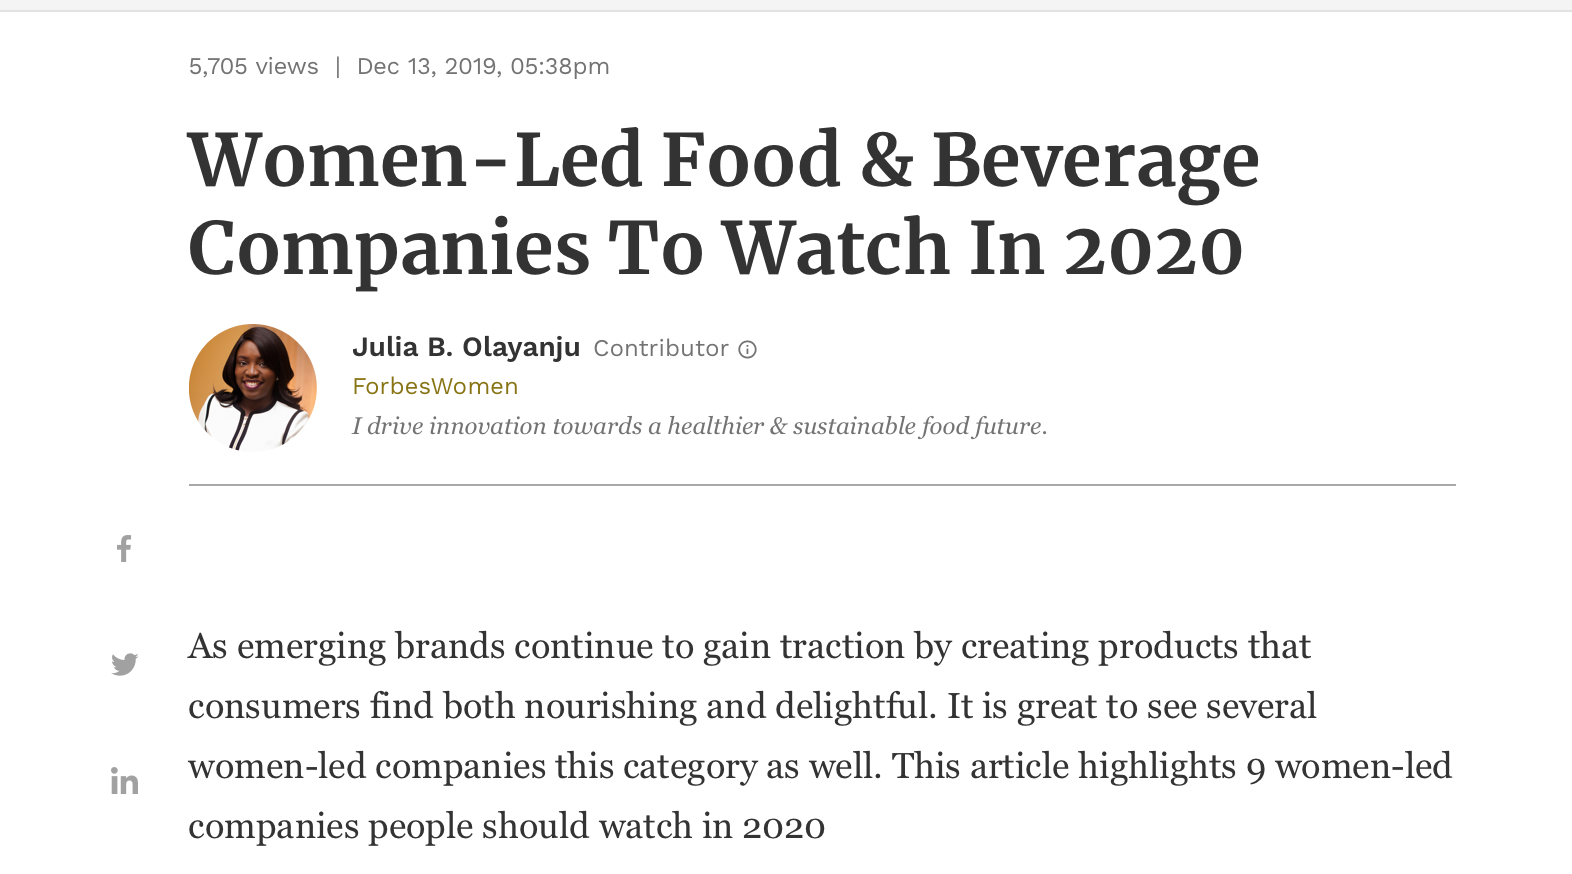 forbes women founded companies to watch 2020 kara landau uplift food